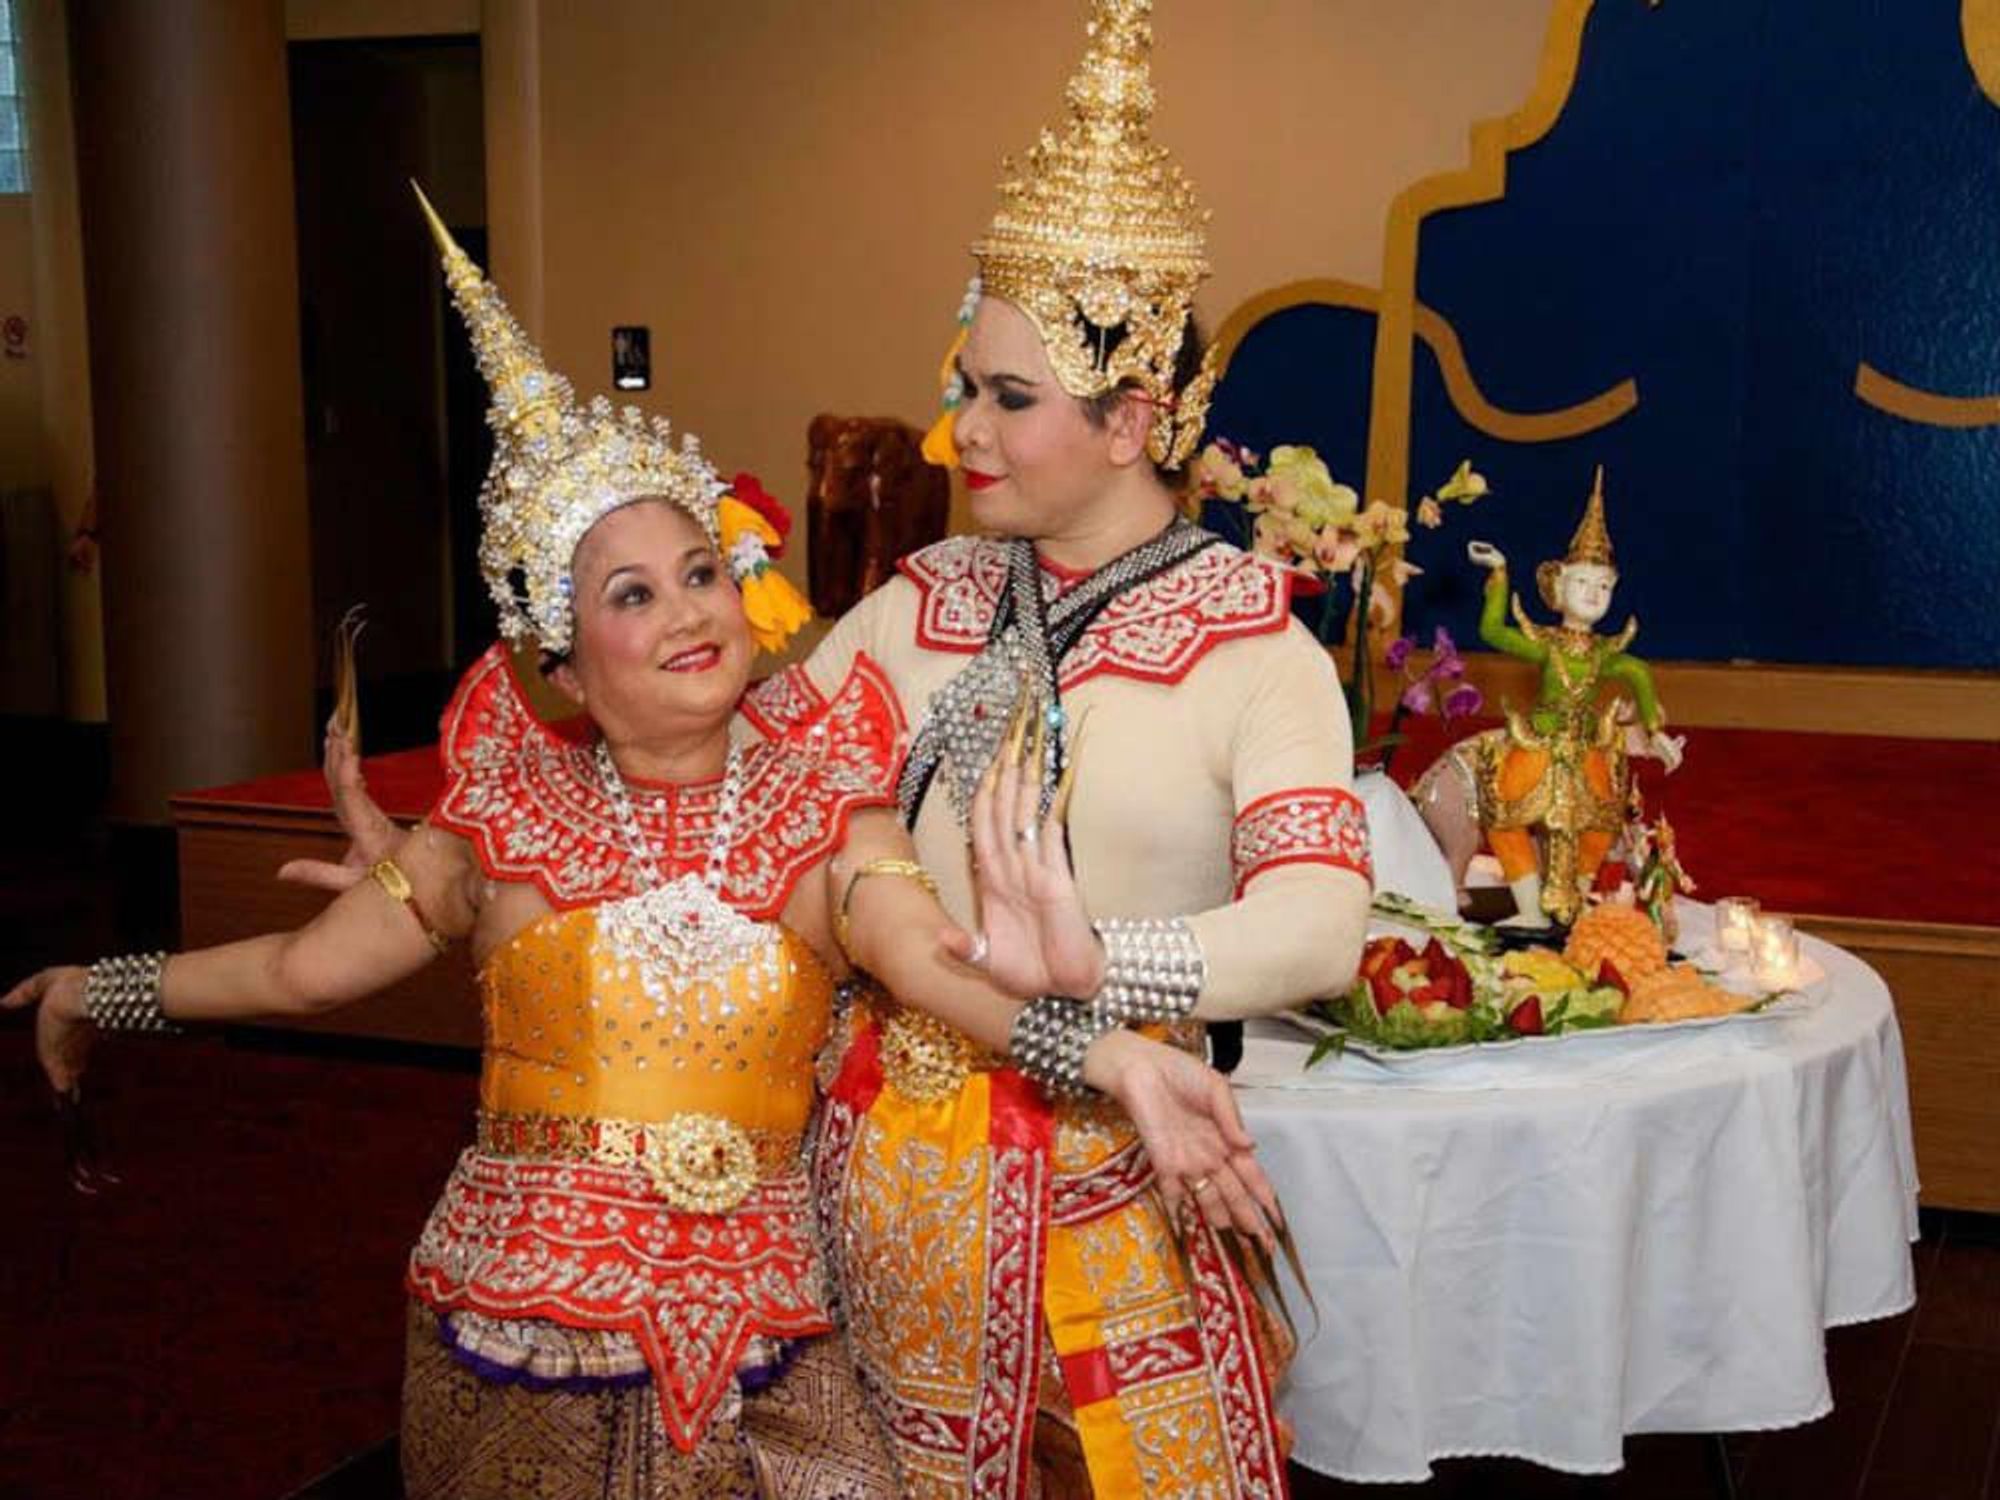 Thai Culture & Food Festival in Dallas